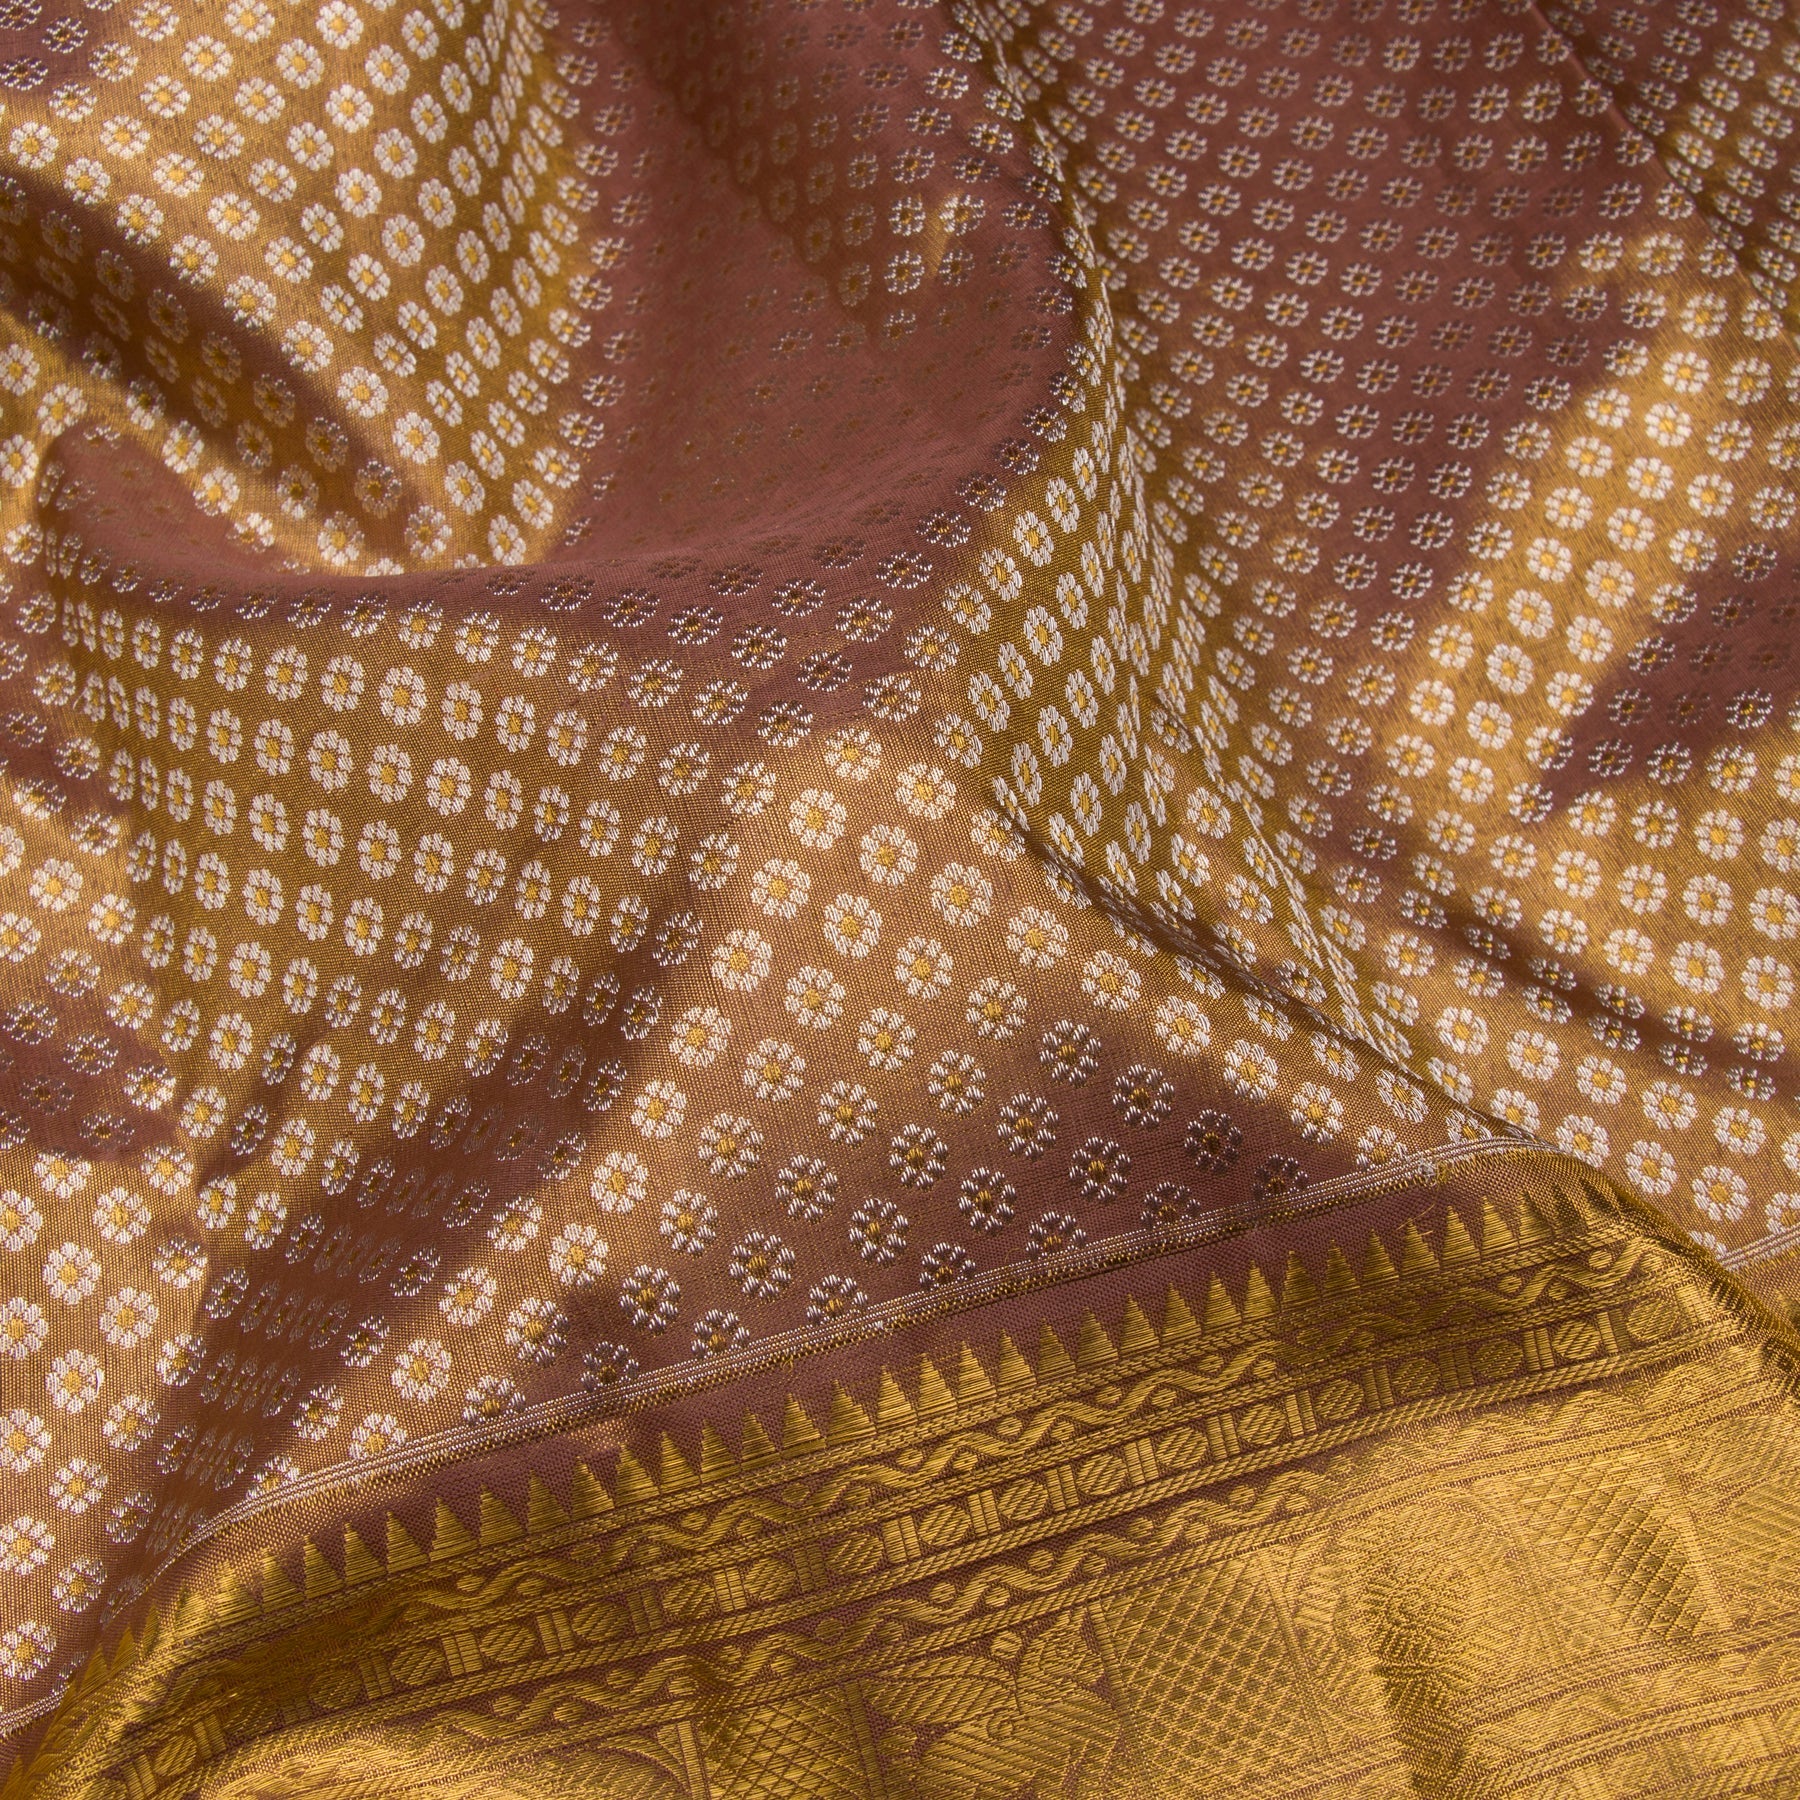 Kanakavalli Kanjivaram Silk Sari 23-110-HS001-09991 - Fabric View